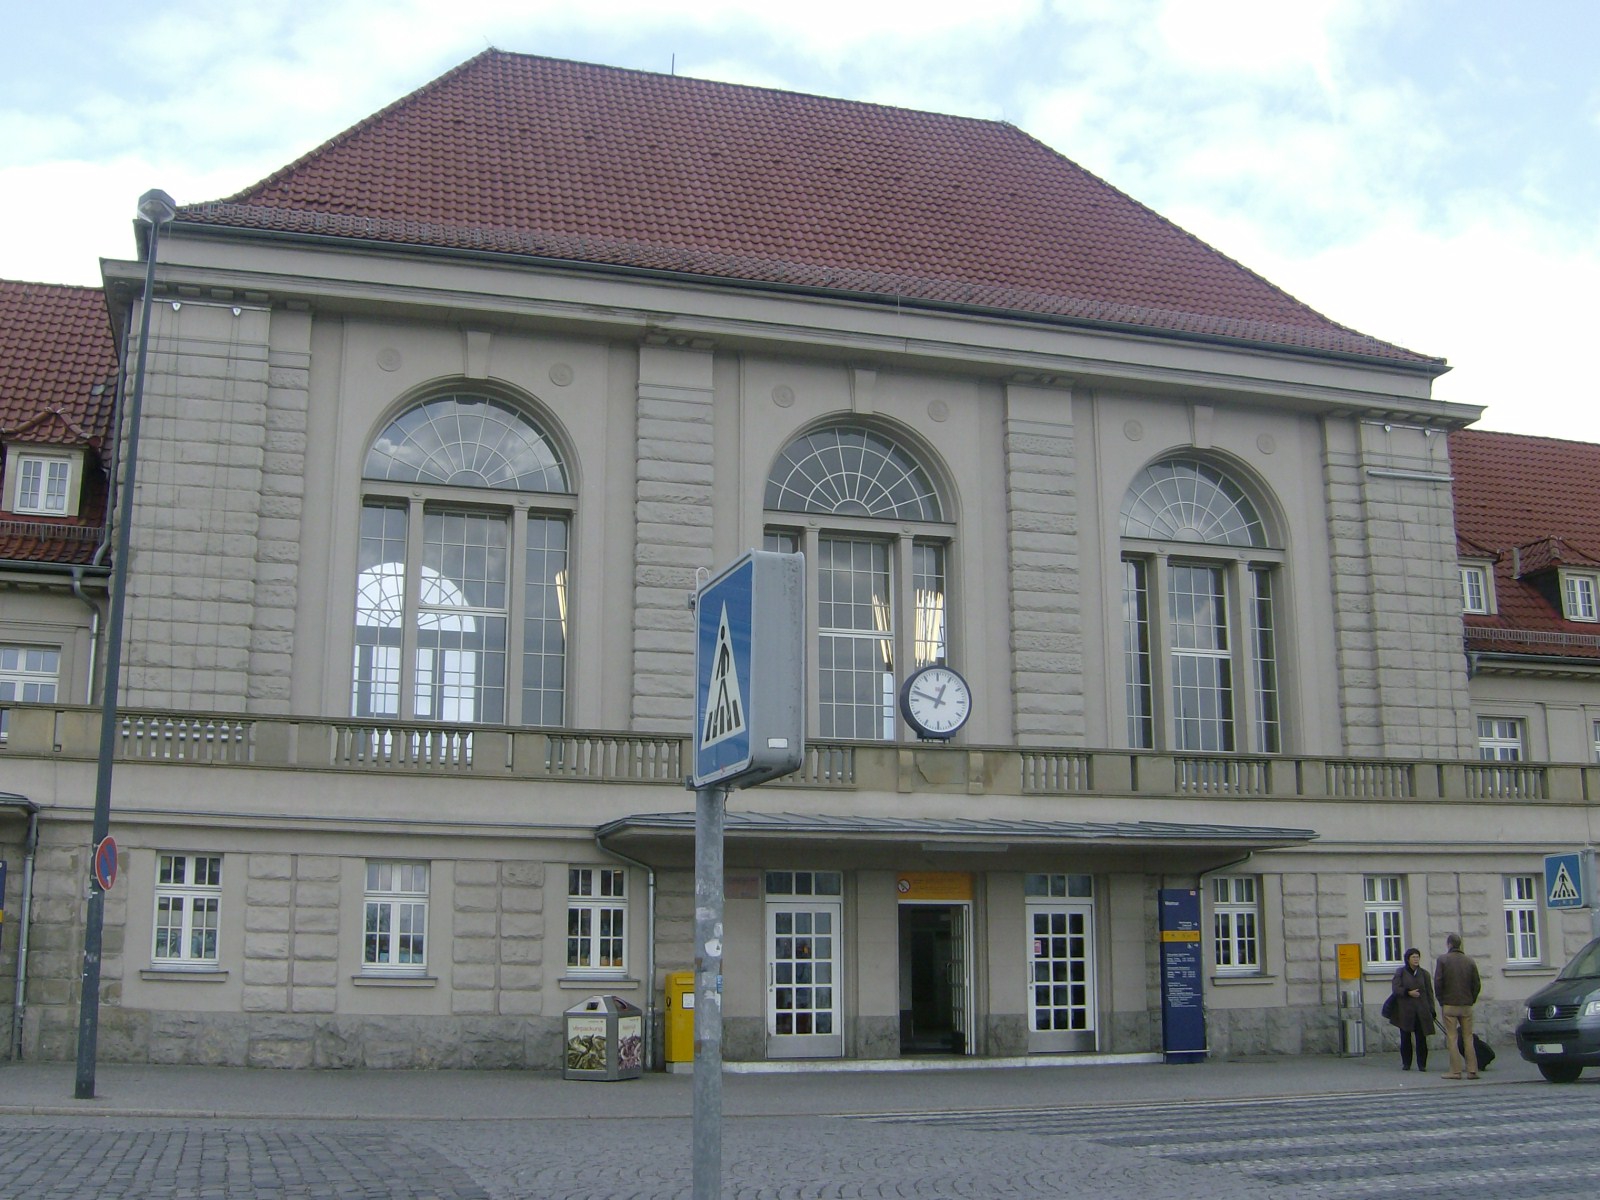 Farbfoto: Der Hauptbahnhof in Weimar im Jahre 2012. Fotograf: Bernd Paepcke.